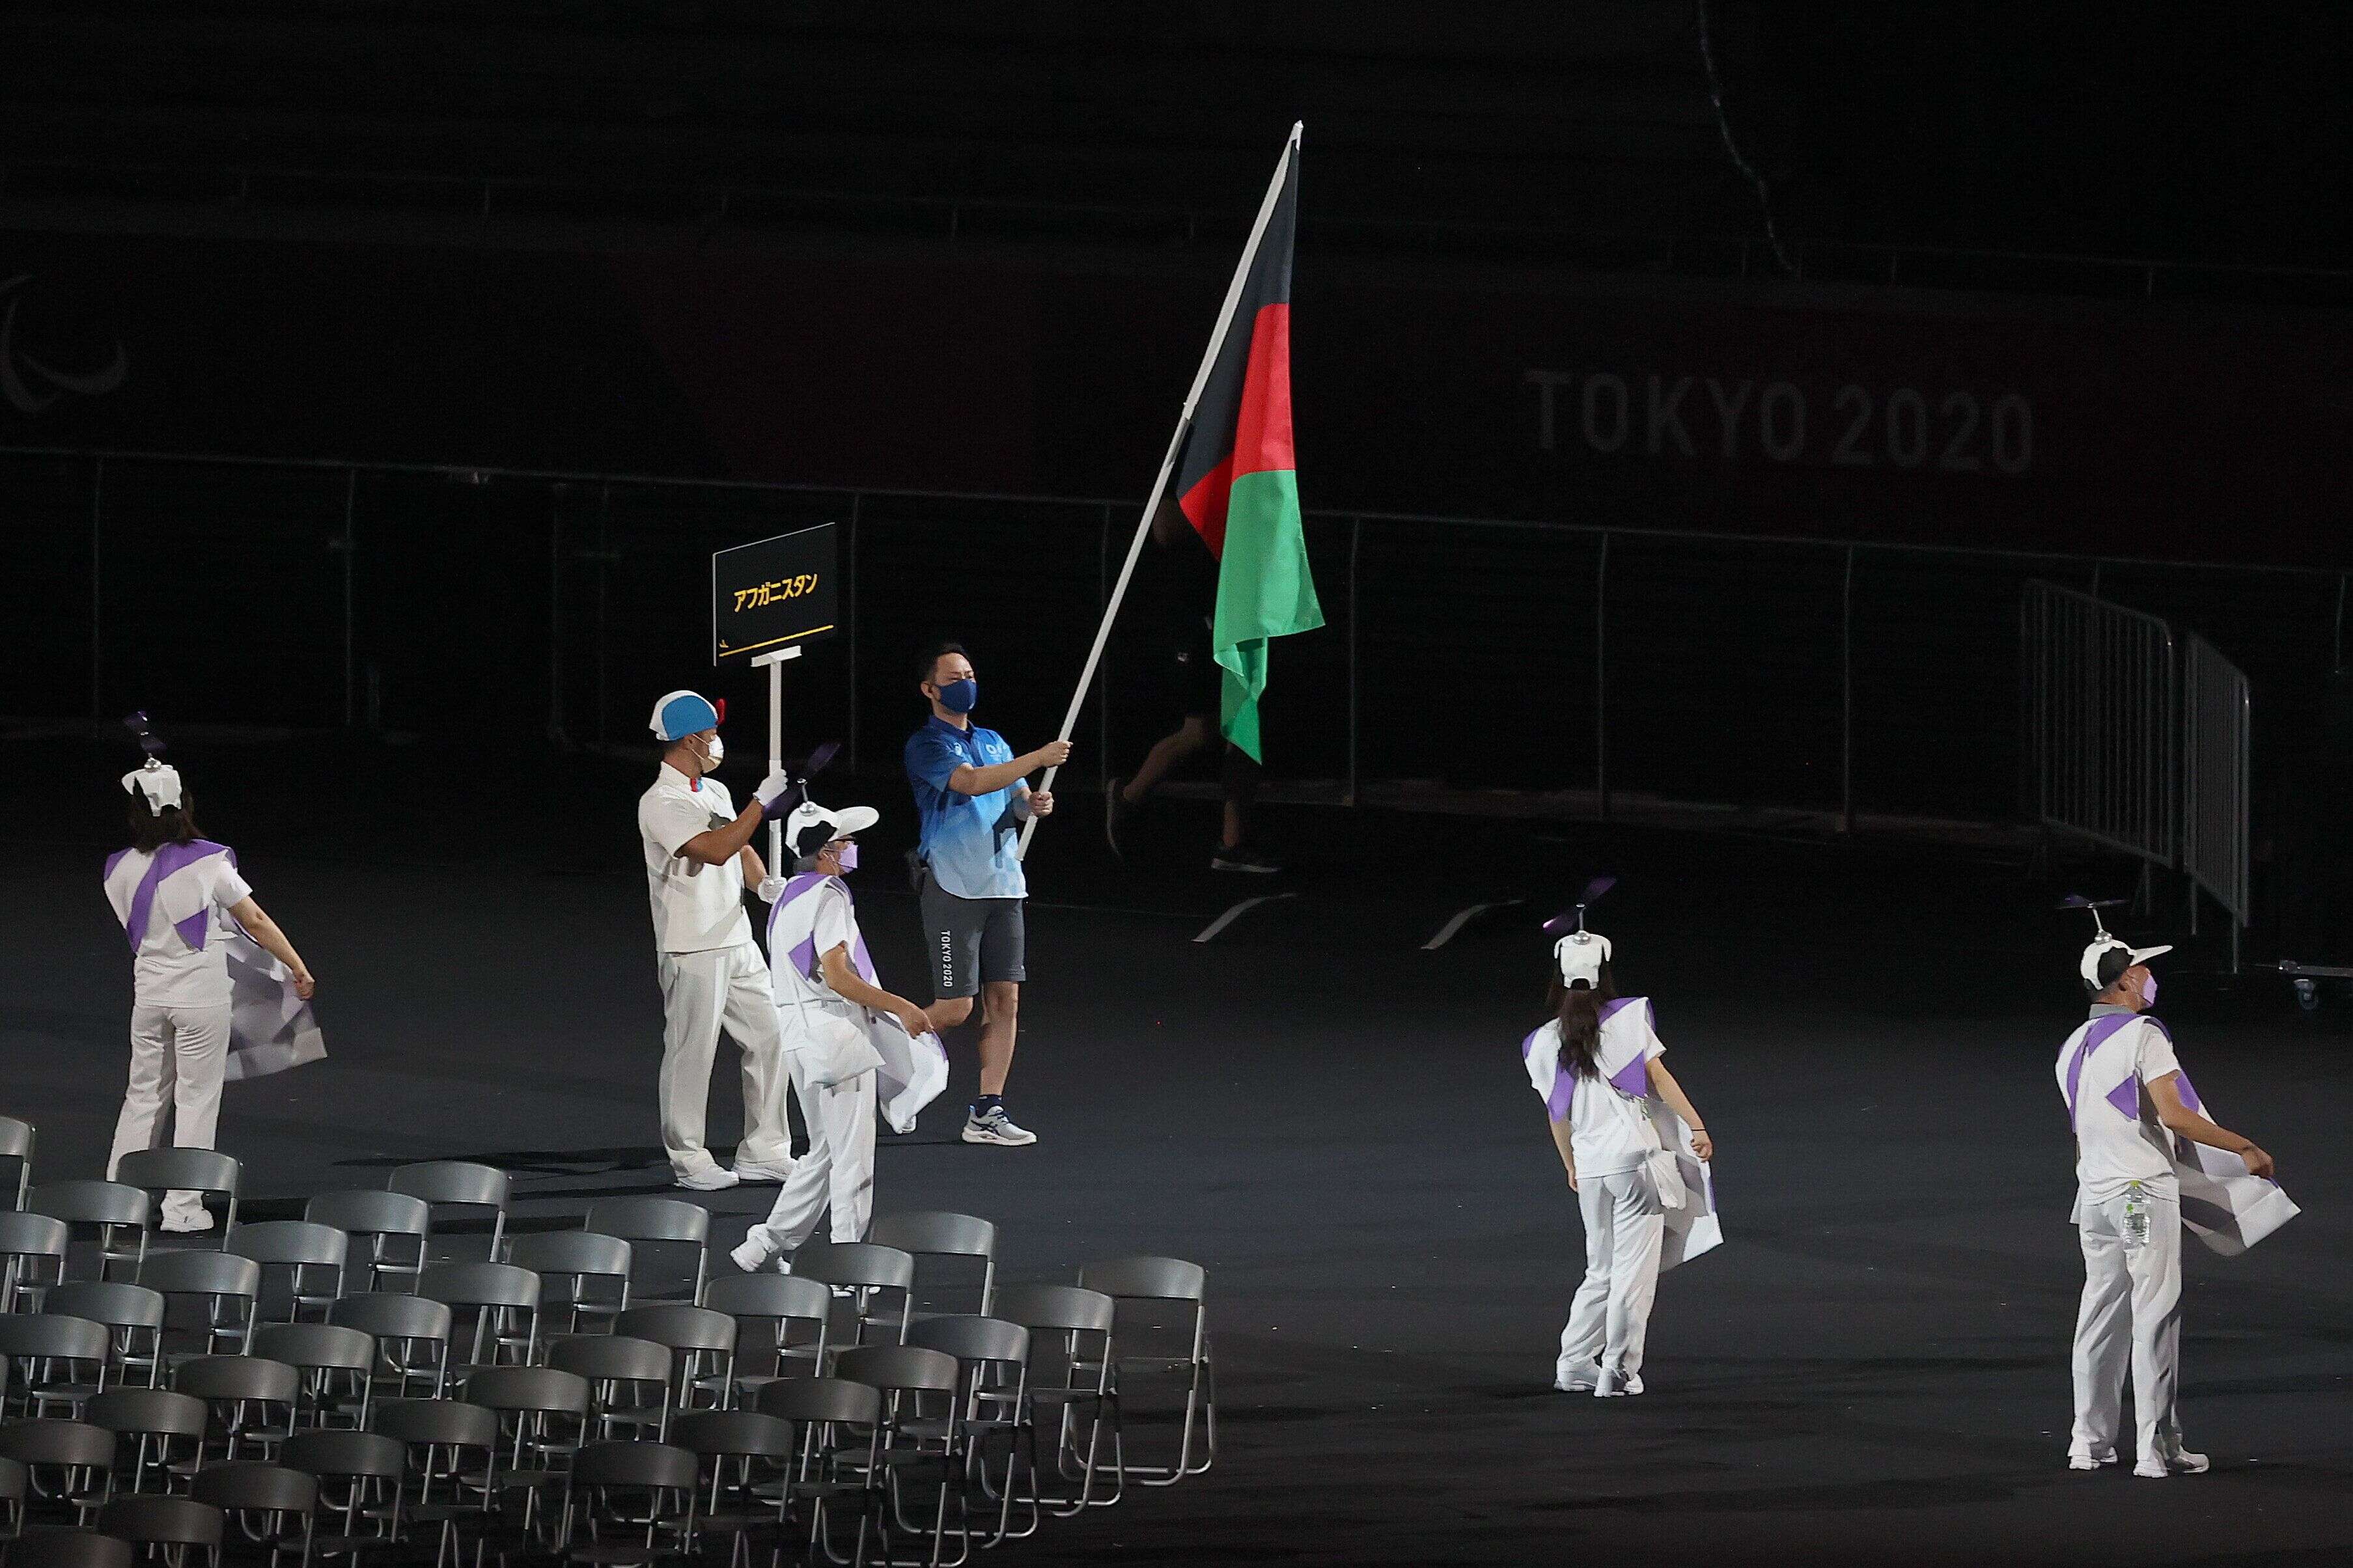 Lors de la cérémonie d'ouverture des Jeux paralympiques le 24 août, le drapeau de l'Afghanistan a été symboliquement porté par des volontaires, en l'absence de délégation.